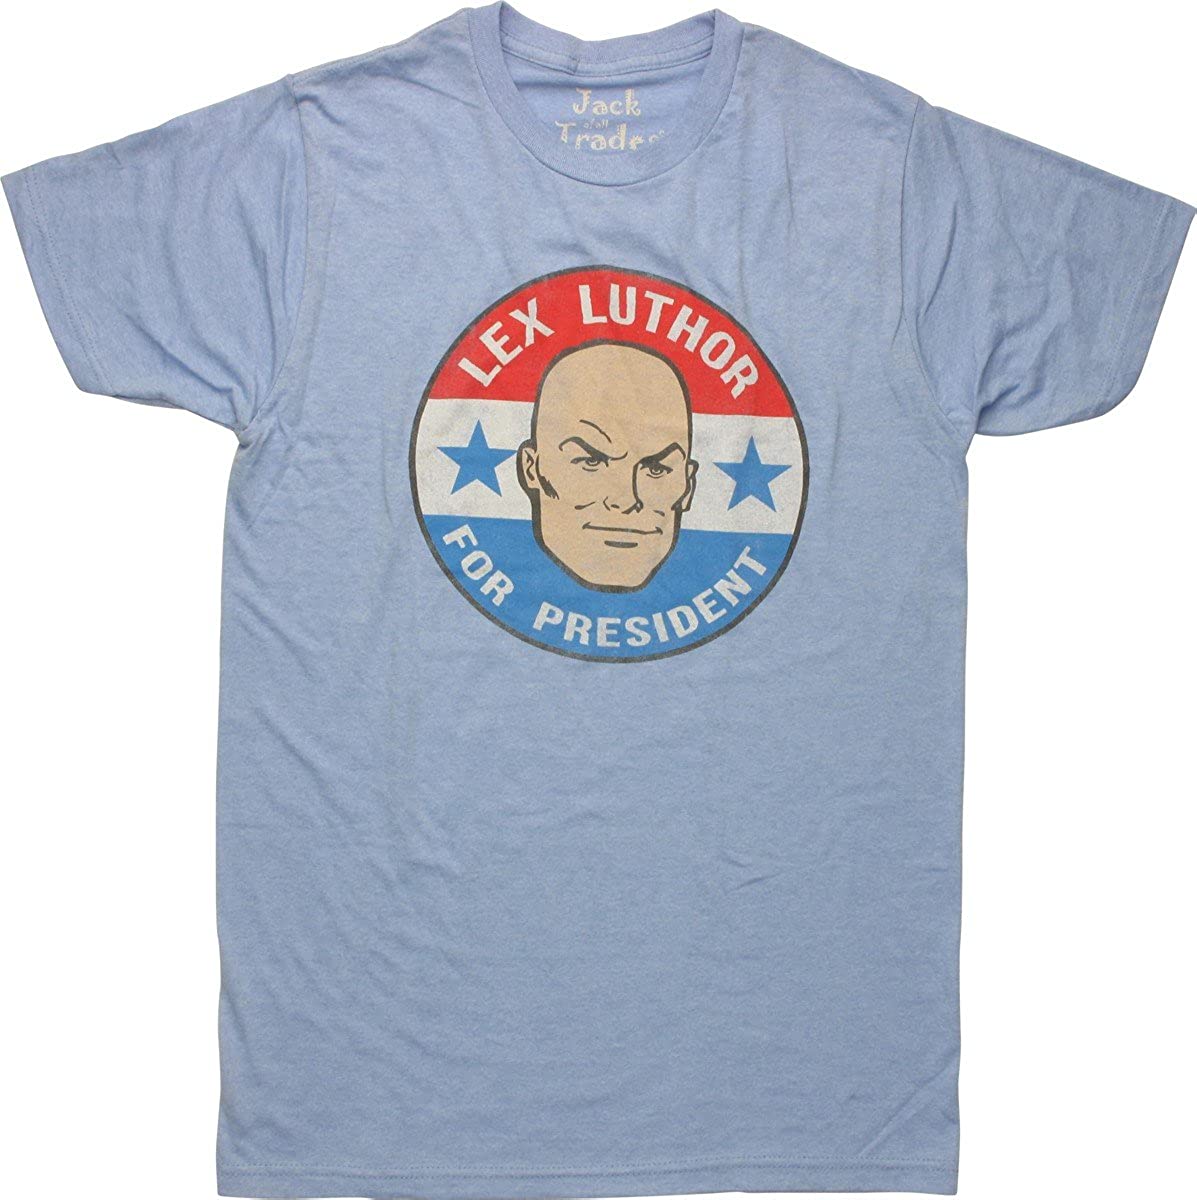 Lex Luthor Merchandise